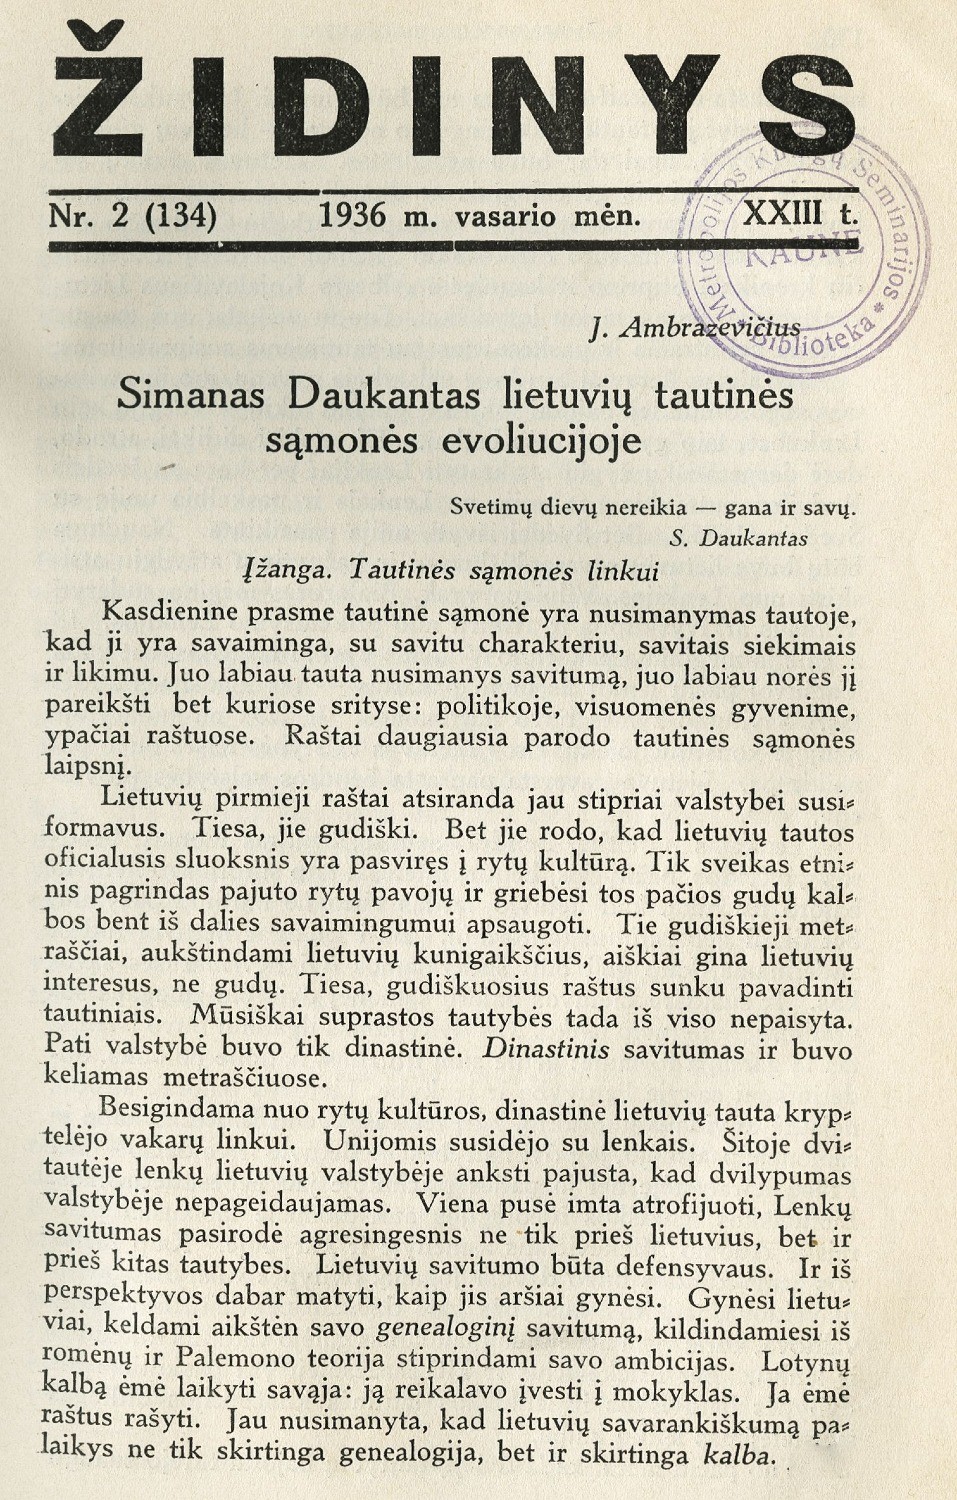 Simonas Daukantas lietuvių tautinės sąmonės evoliucijoje / J. Ambrazevičius // Židinys. – 1936, Nr. 2, p. 129–139.